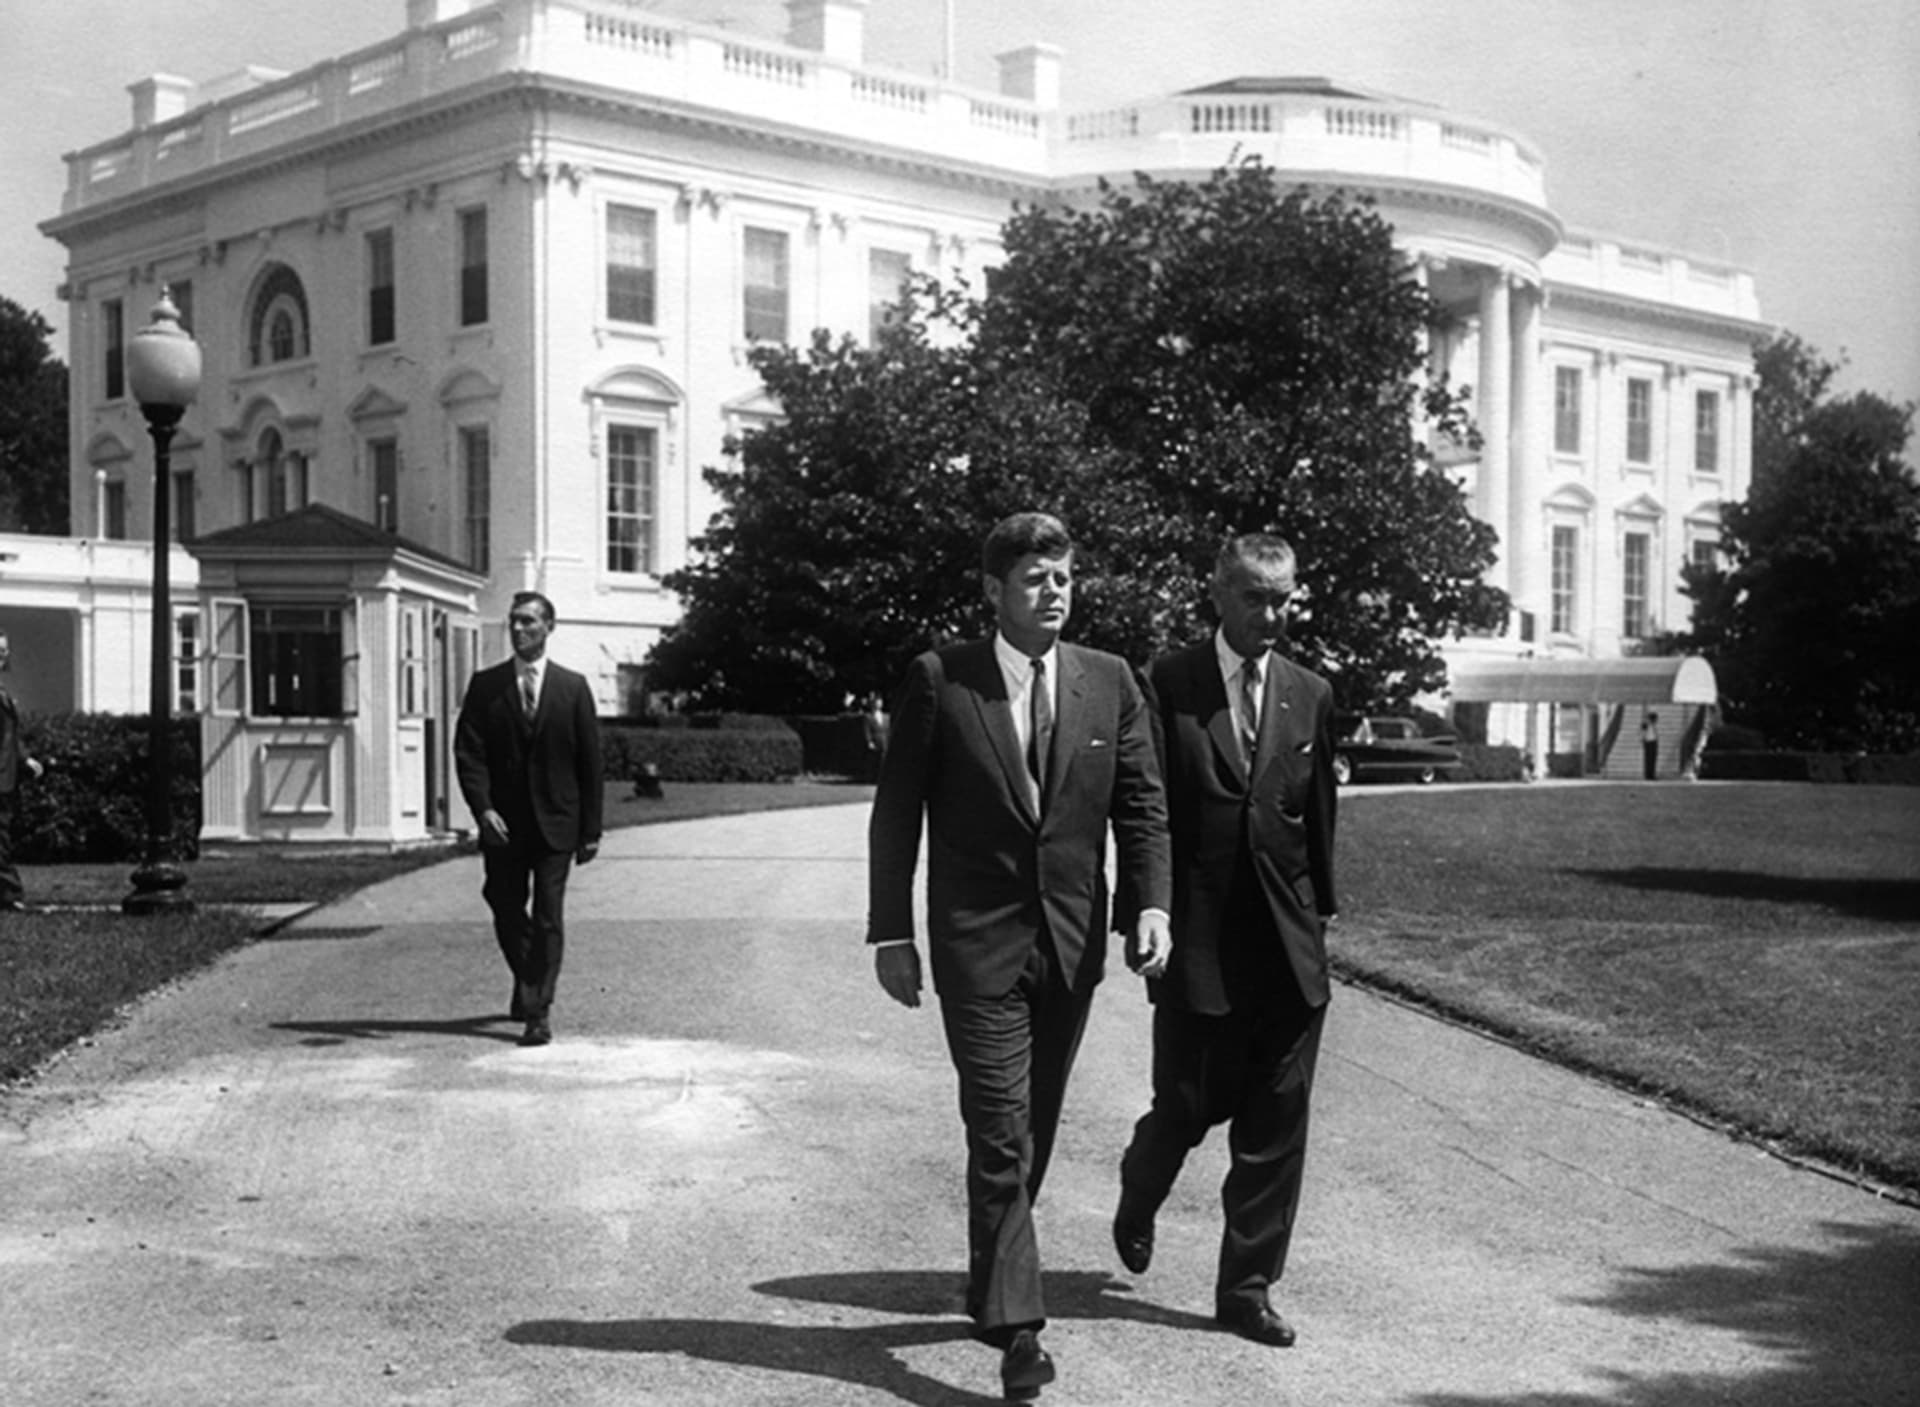 Po prohře v primárkách se Johnson překvapivě postavil za J. F. Kennedyho, kterému dopomohl k vítězství v prezidentských volbách. Vytěžil z toho funkci viceprezidenta.